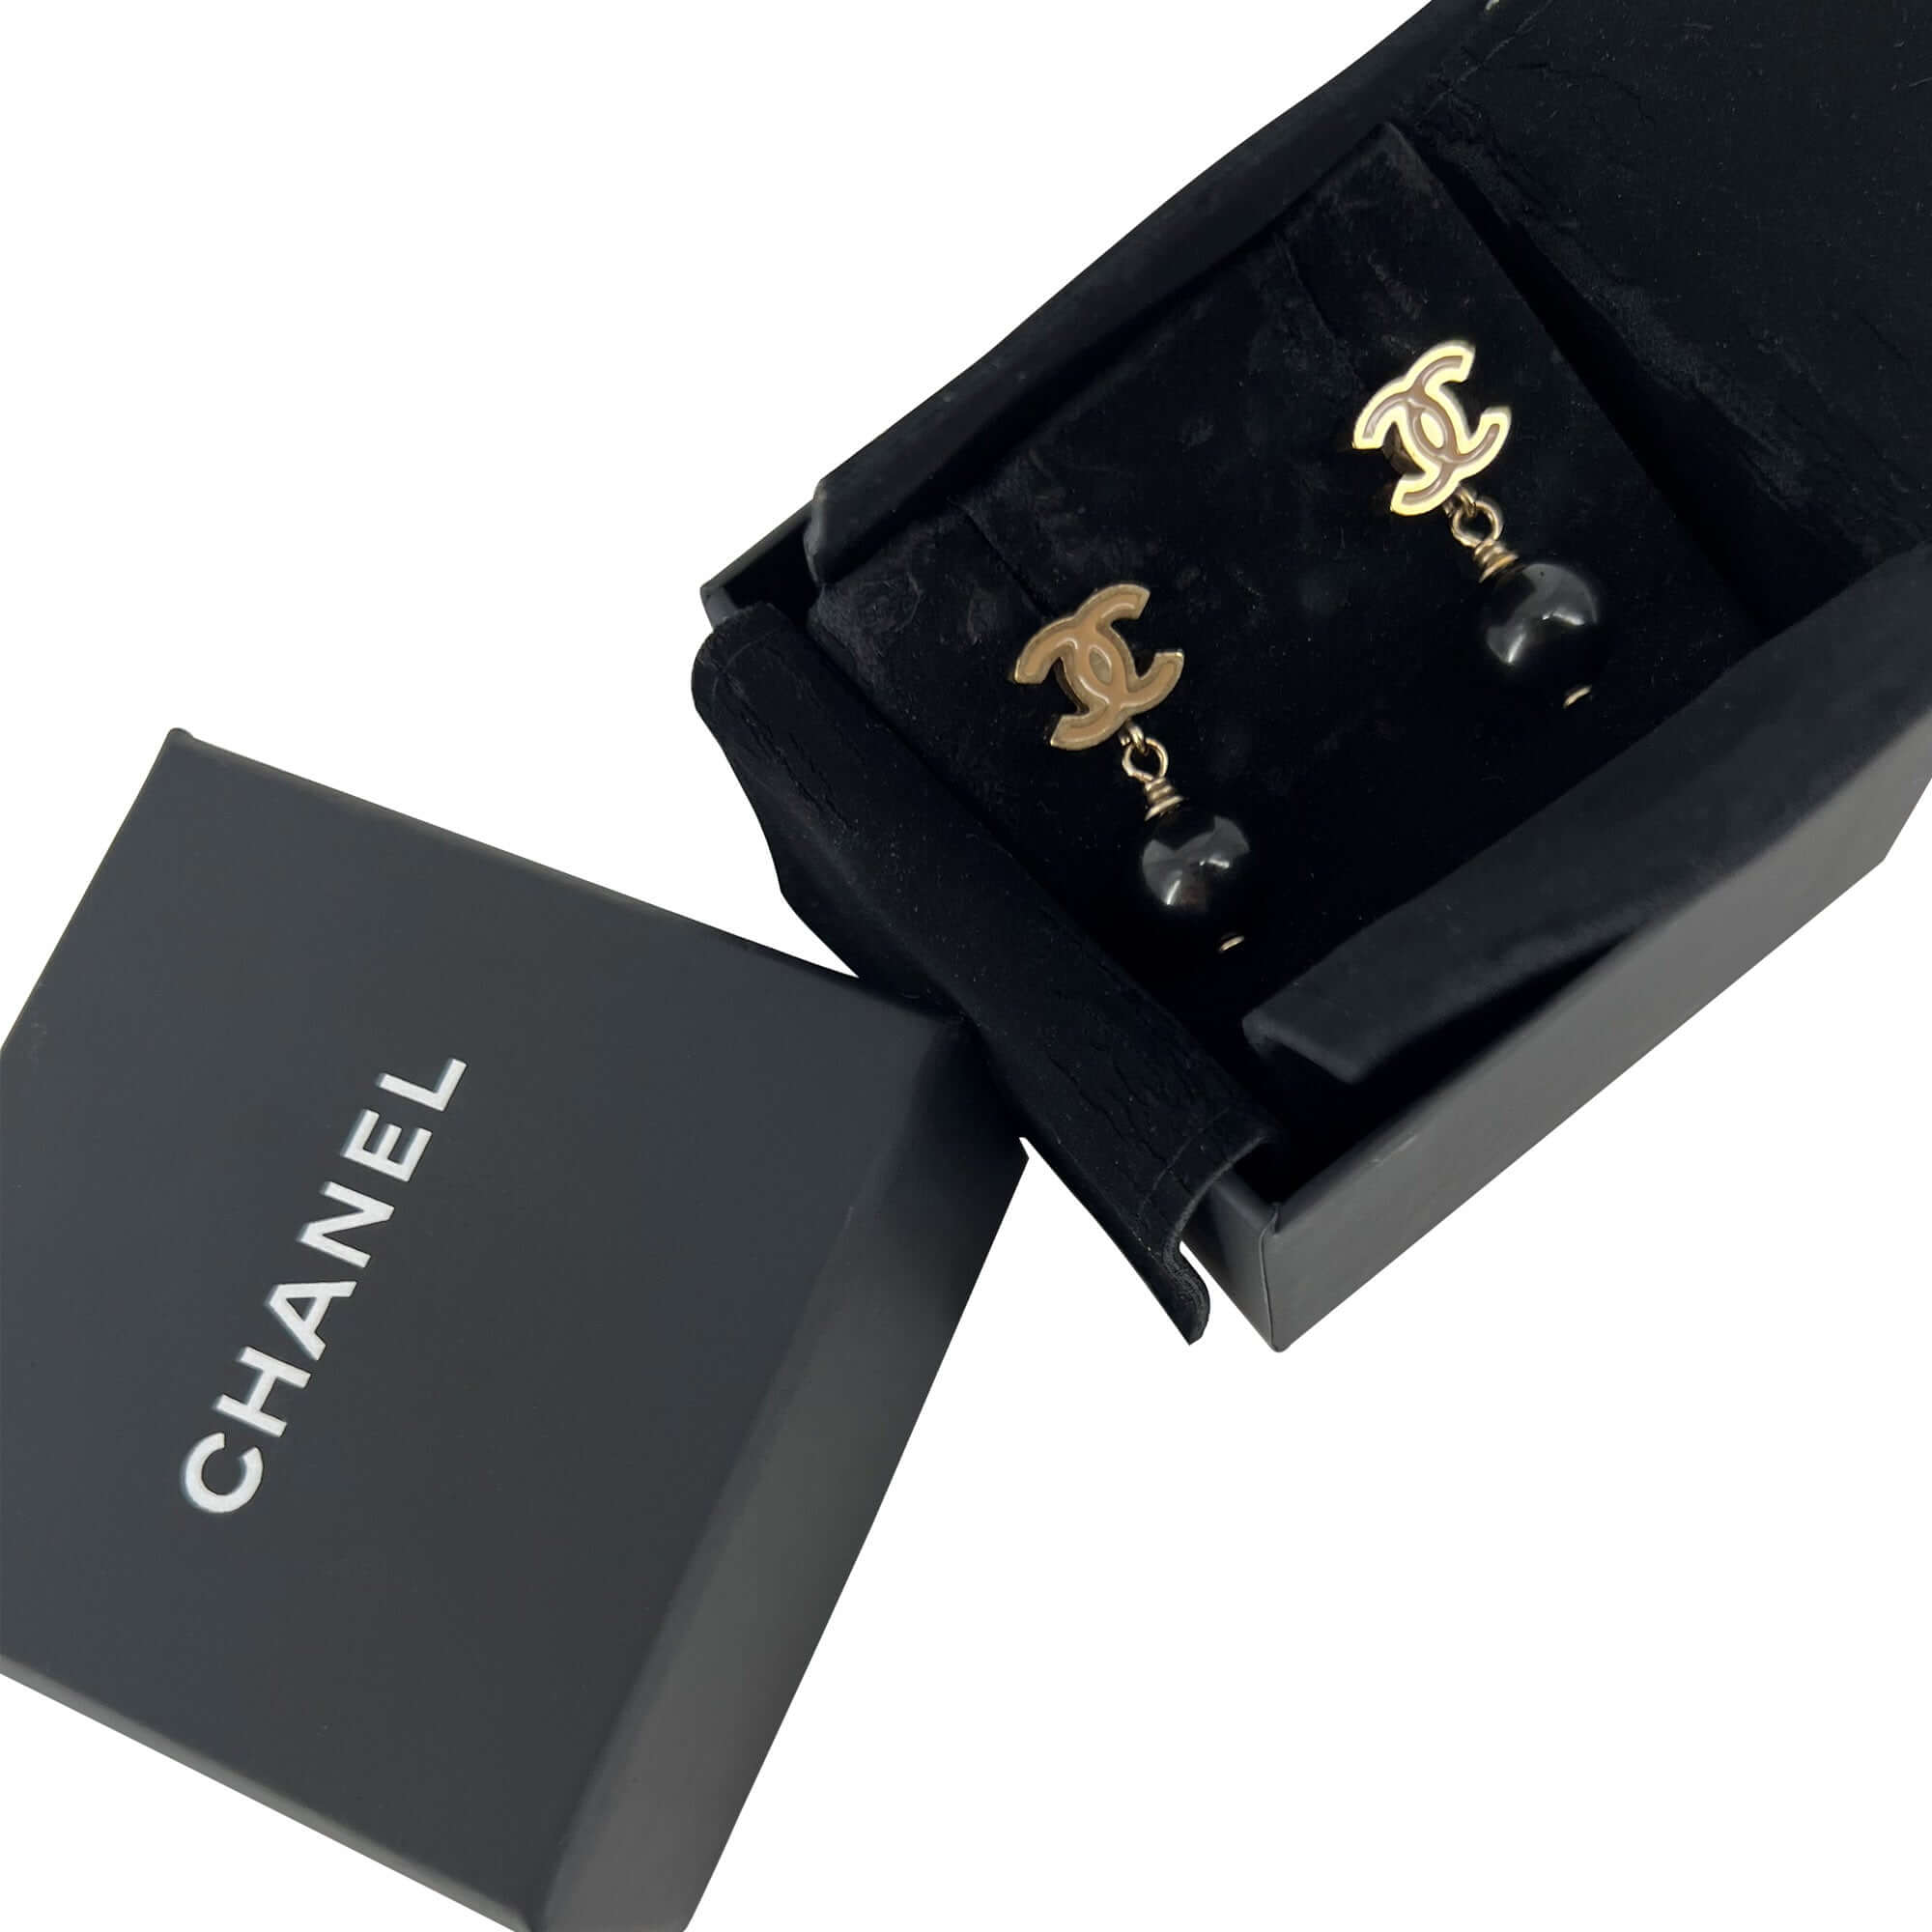 Chanel CC logo black bead drop earrings